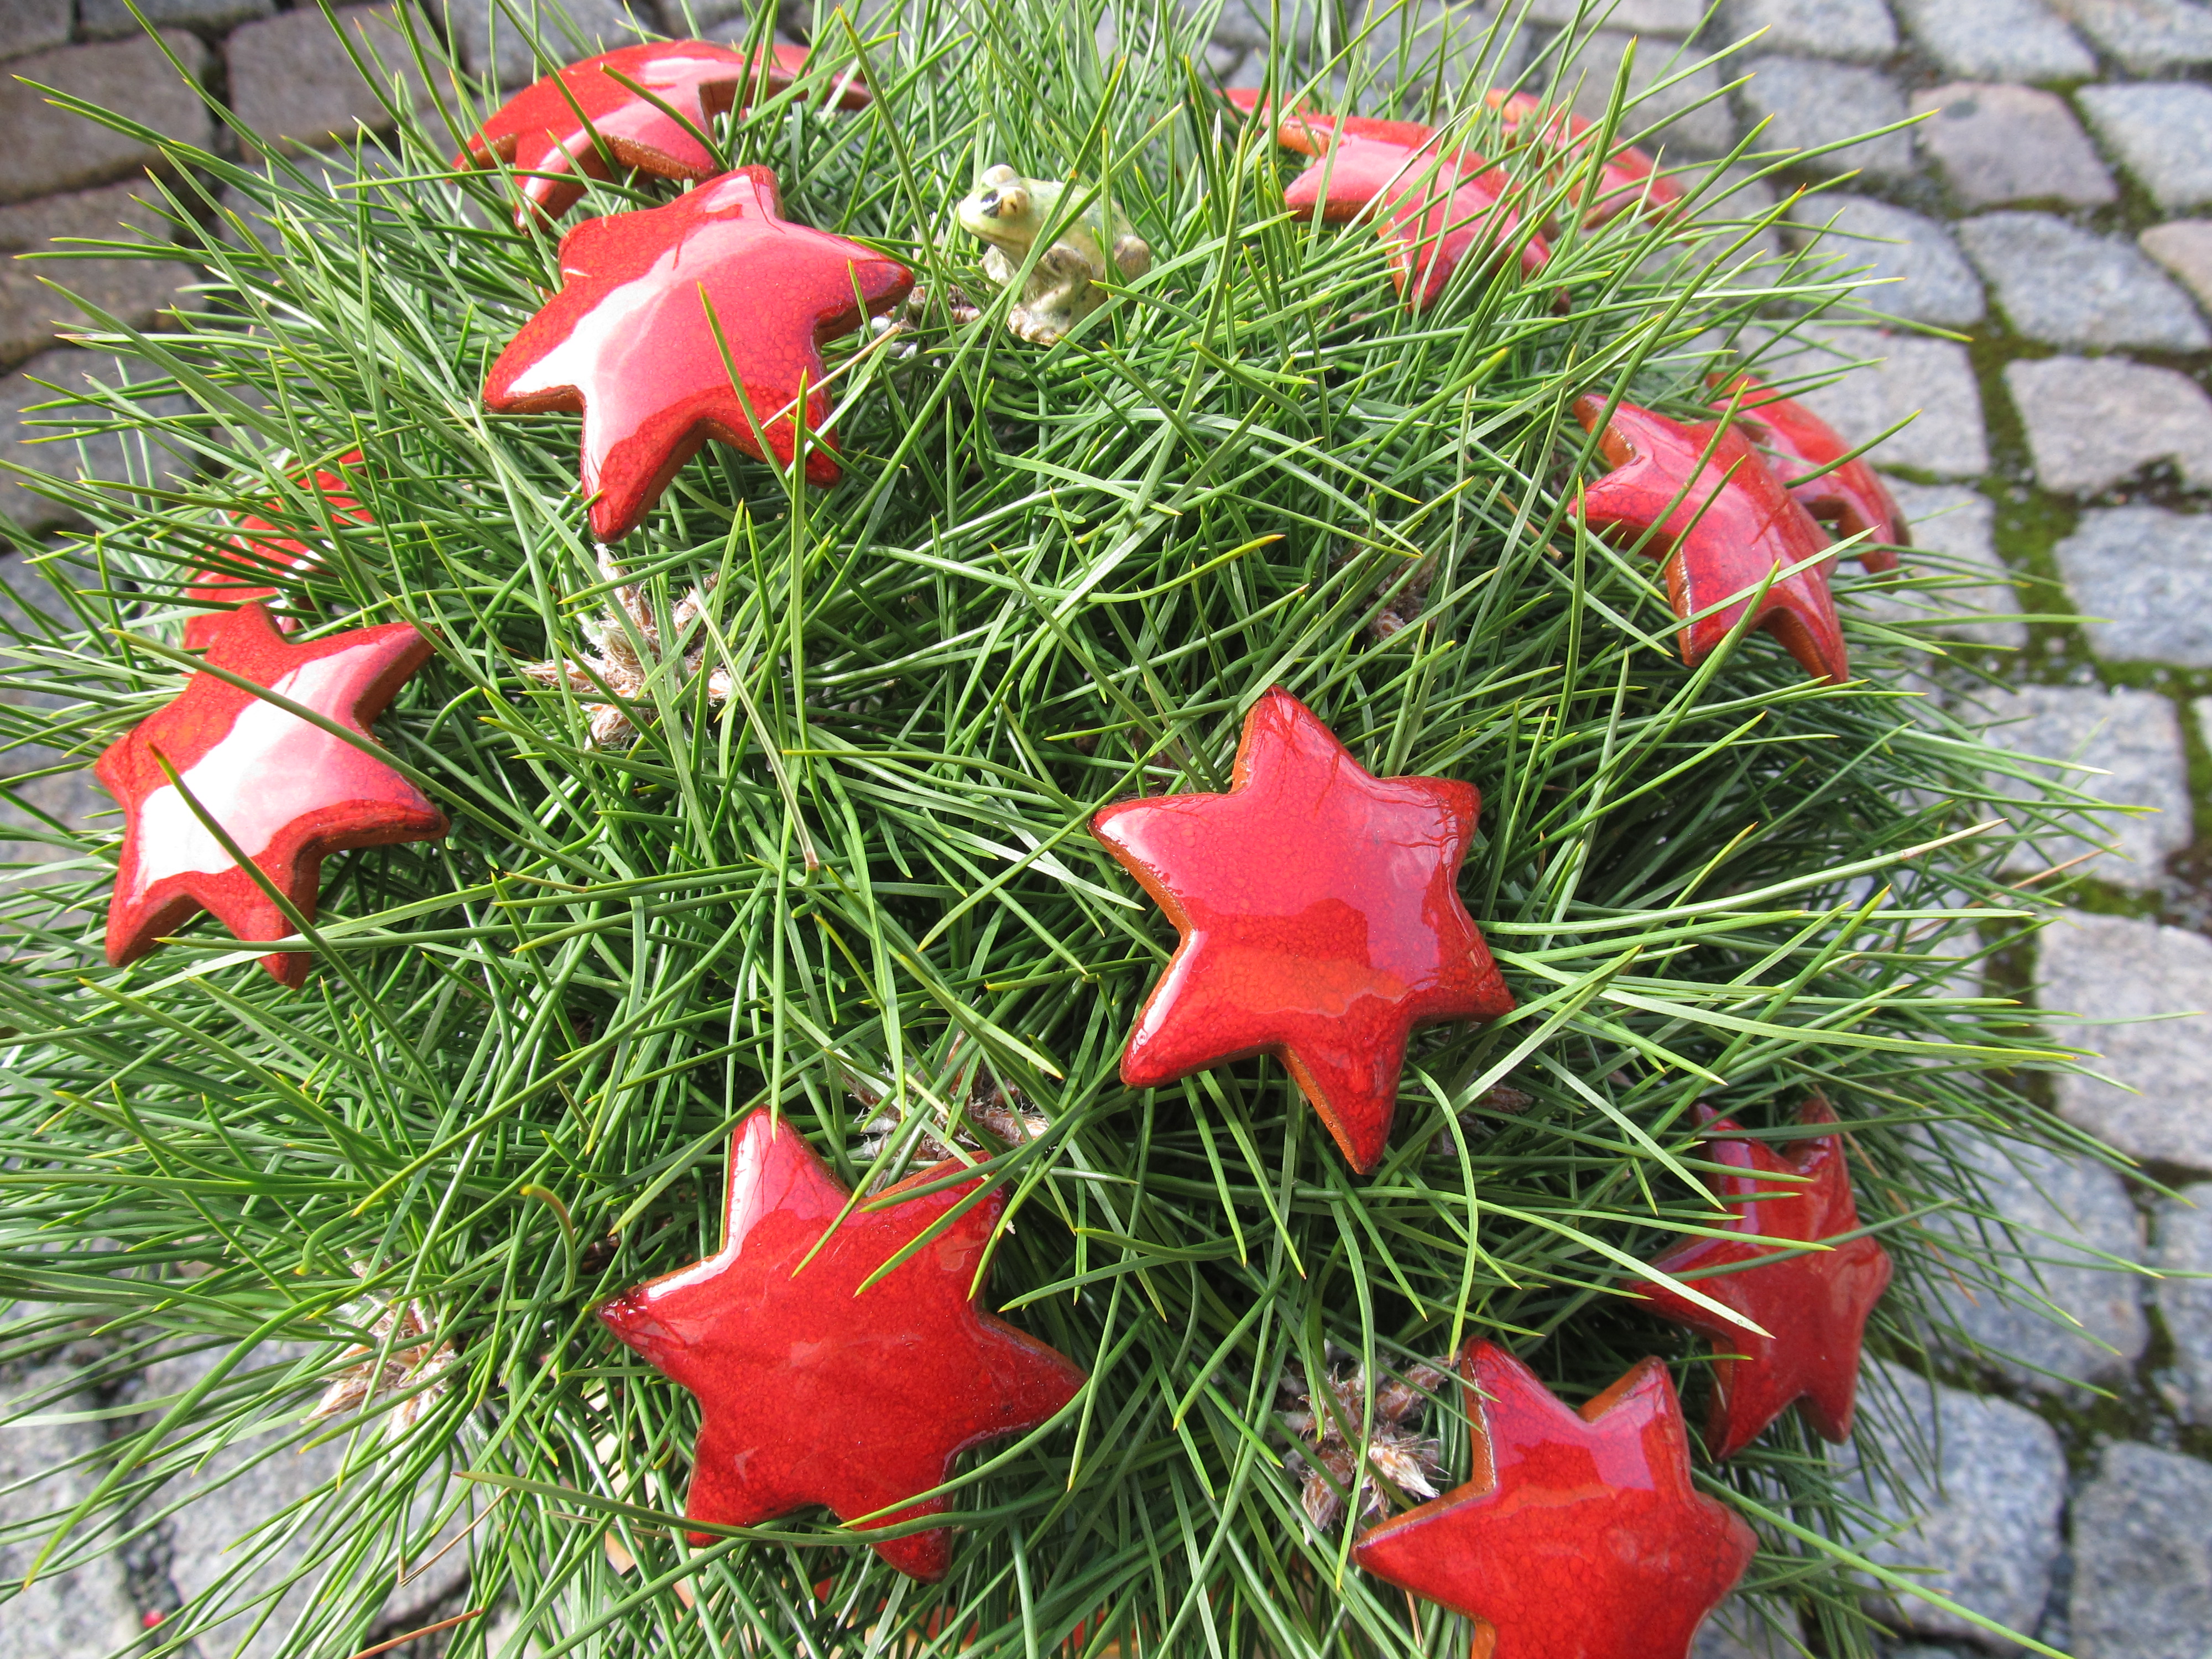 Steckblümchen Blume Weihnachten rot/ M 4,5cm